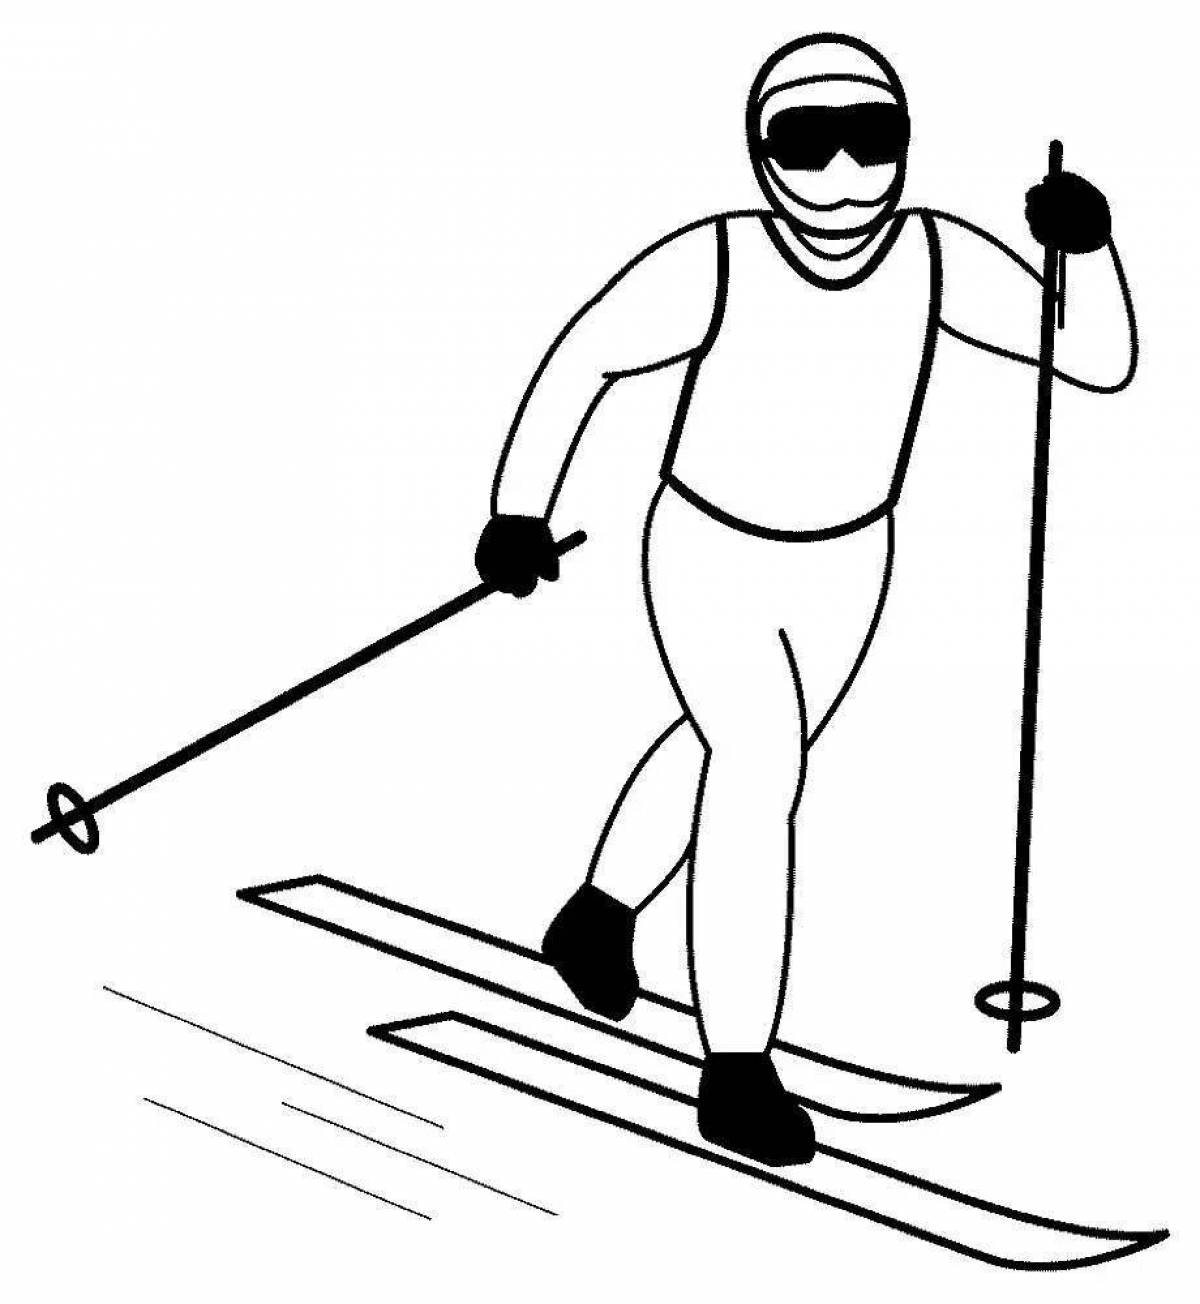 Грациозная лыжница в движении